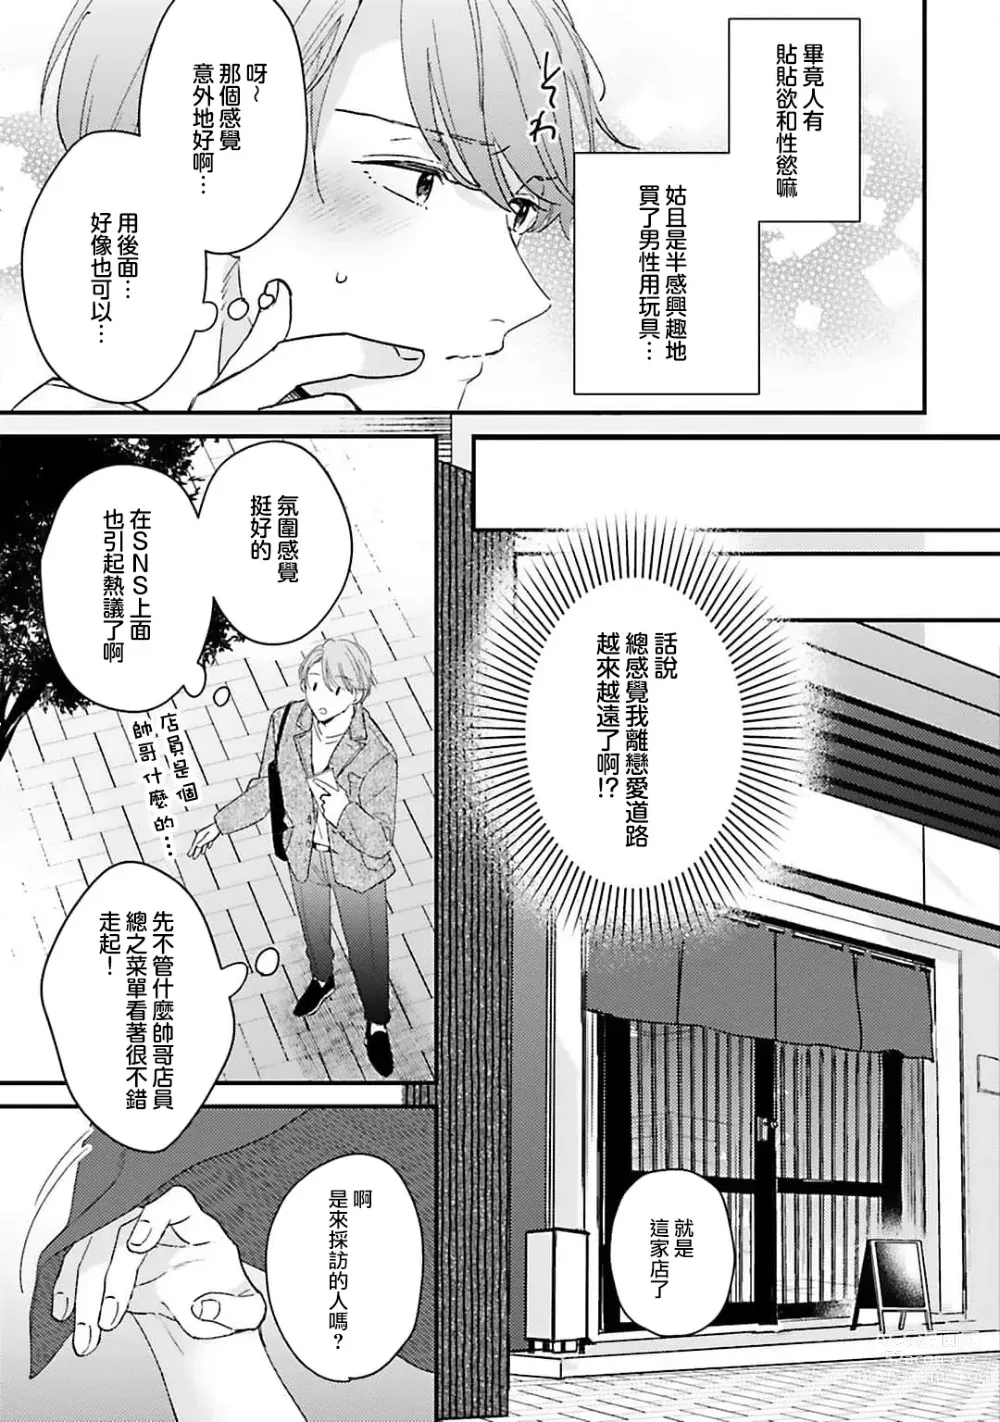 Page 6 of manga 绽放的恋爱皆为醉与甜1-5